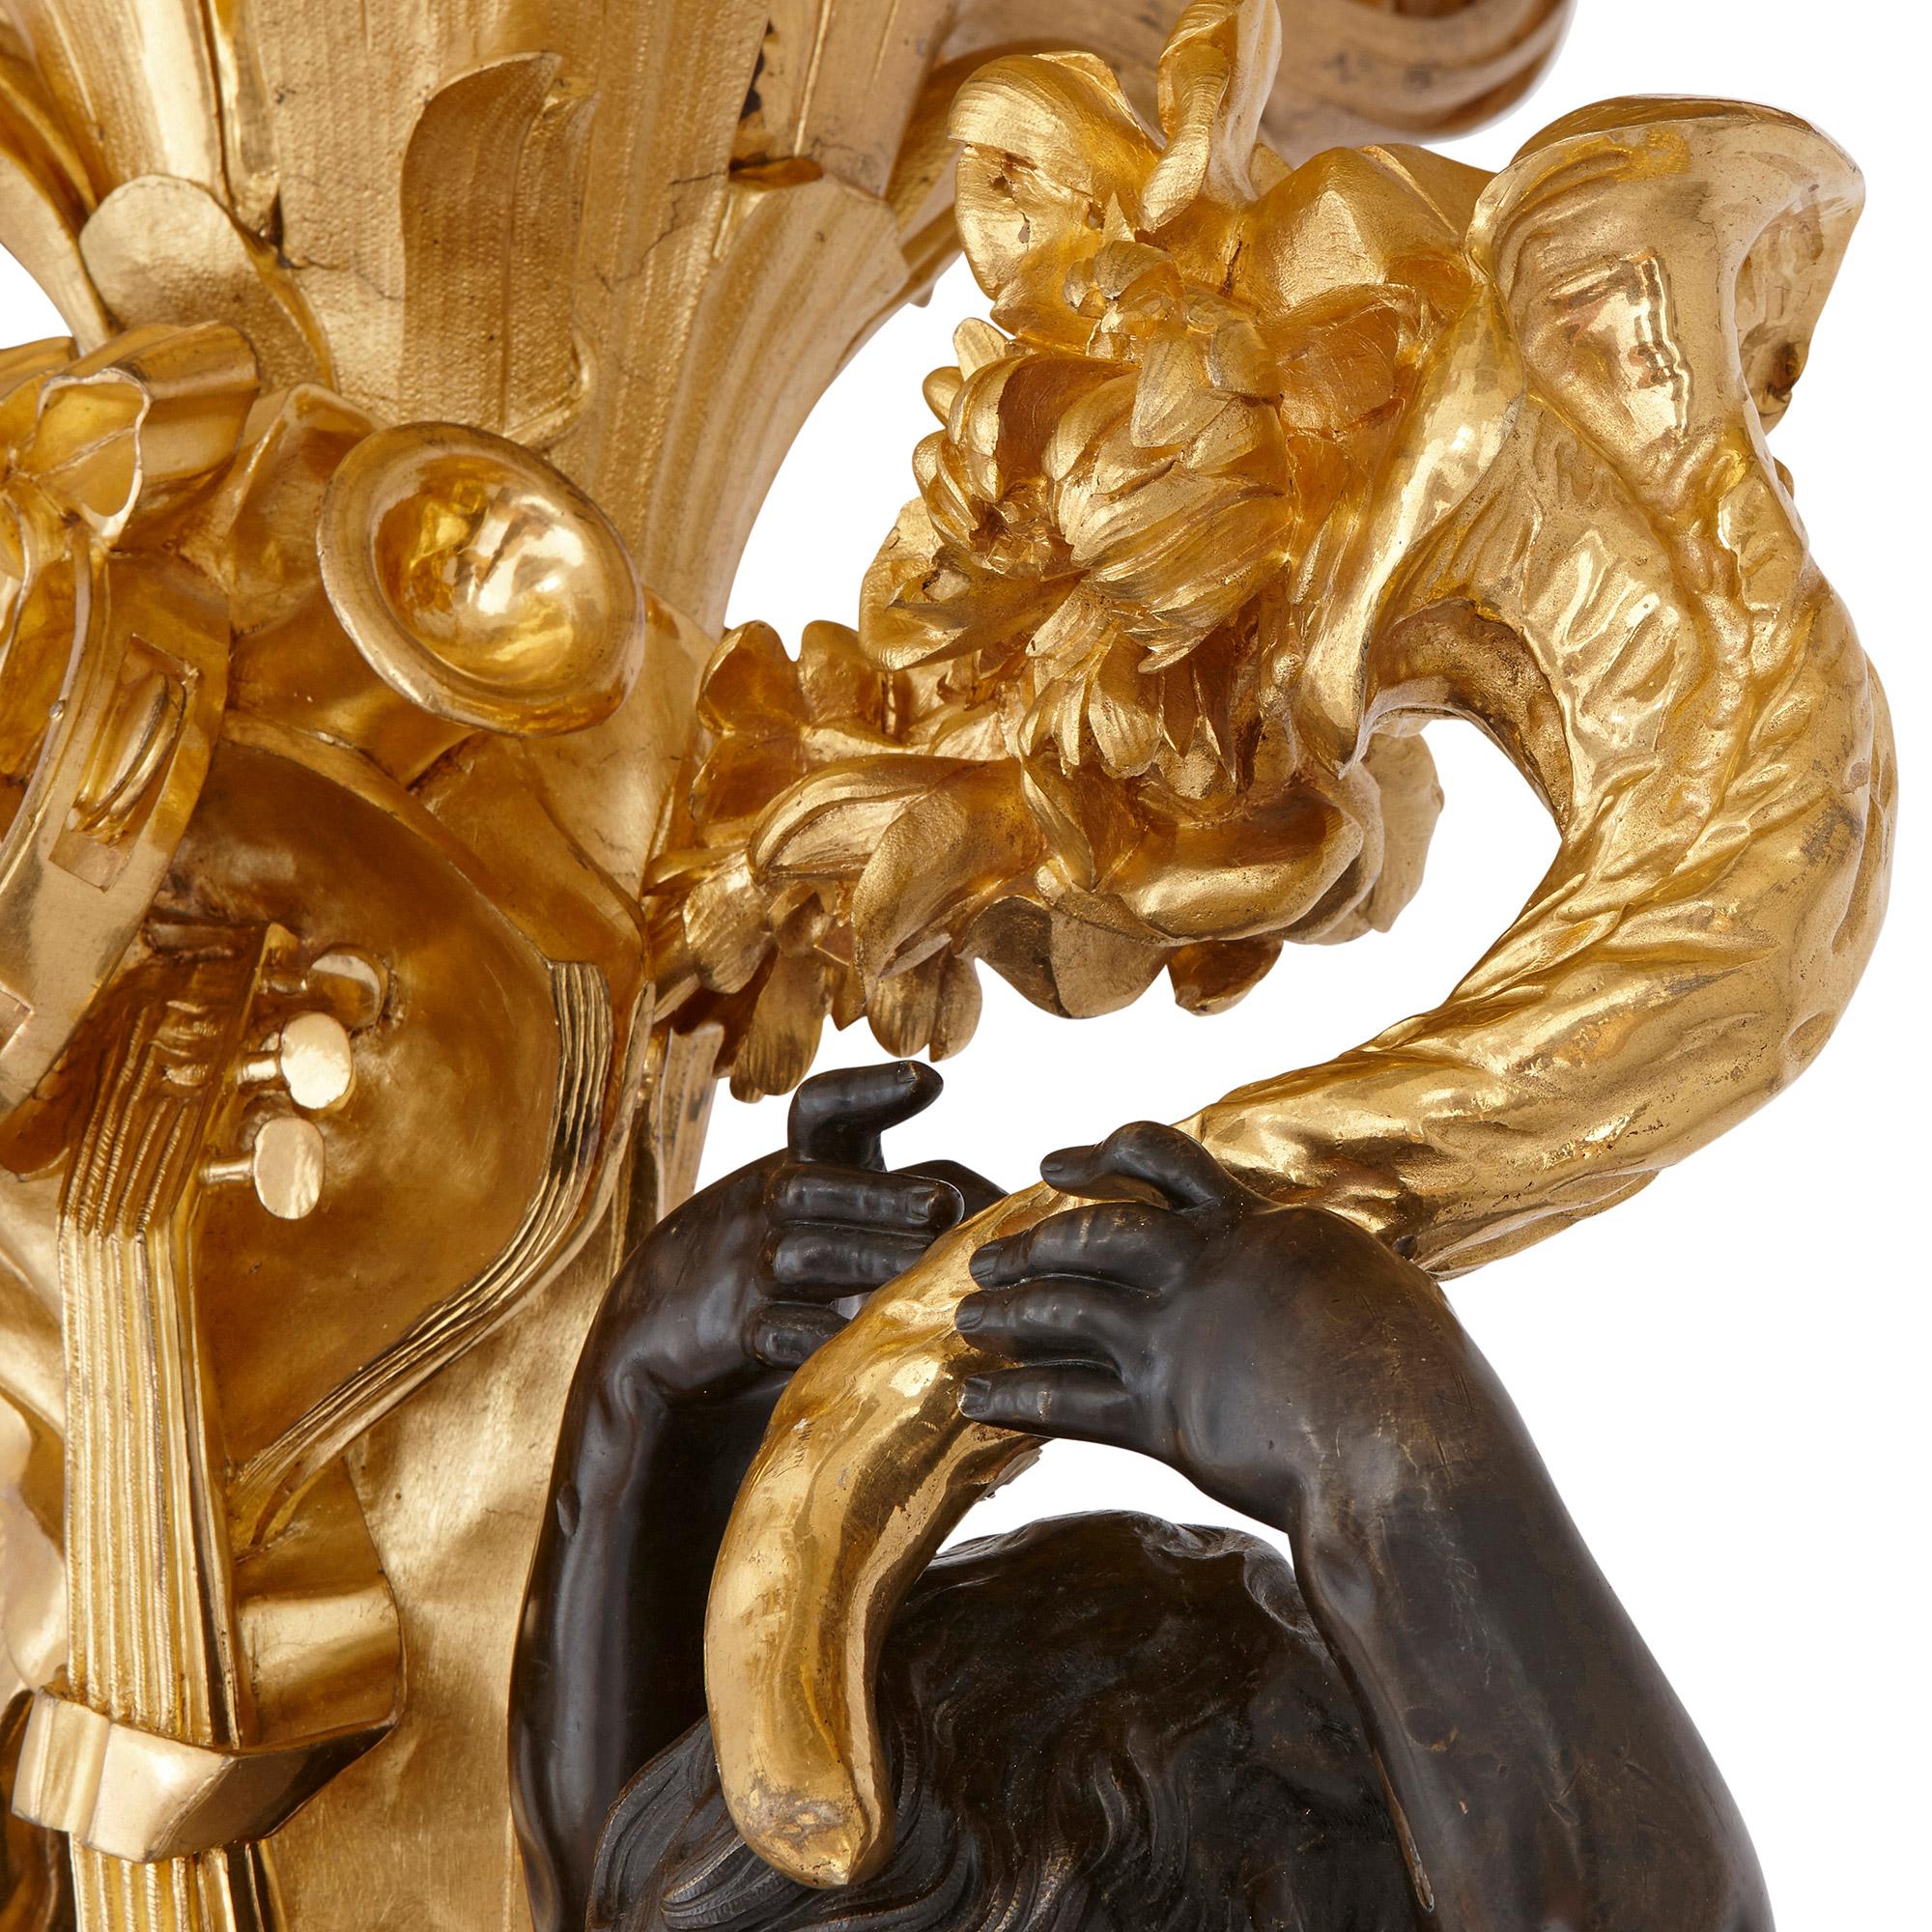 Monumental candélabre en bronze doré et patiné de Beurdeley
Français, fin du XIXe siècle
Mesures : Hauteur 273 cm, largeur 90 cm, profondeur 90 cm.

Cette paire de candélabres monumentale et opulente de Beurdeley témoigne du talent artistique et